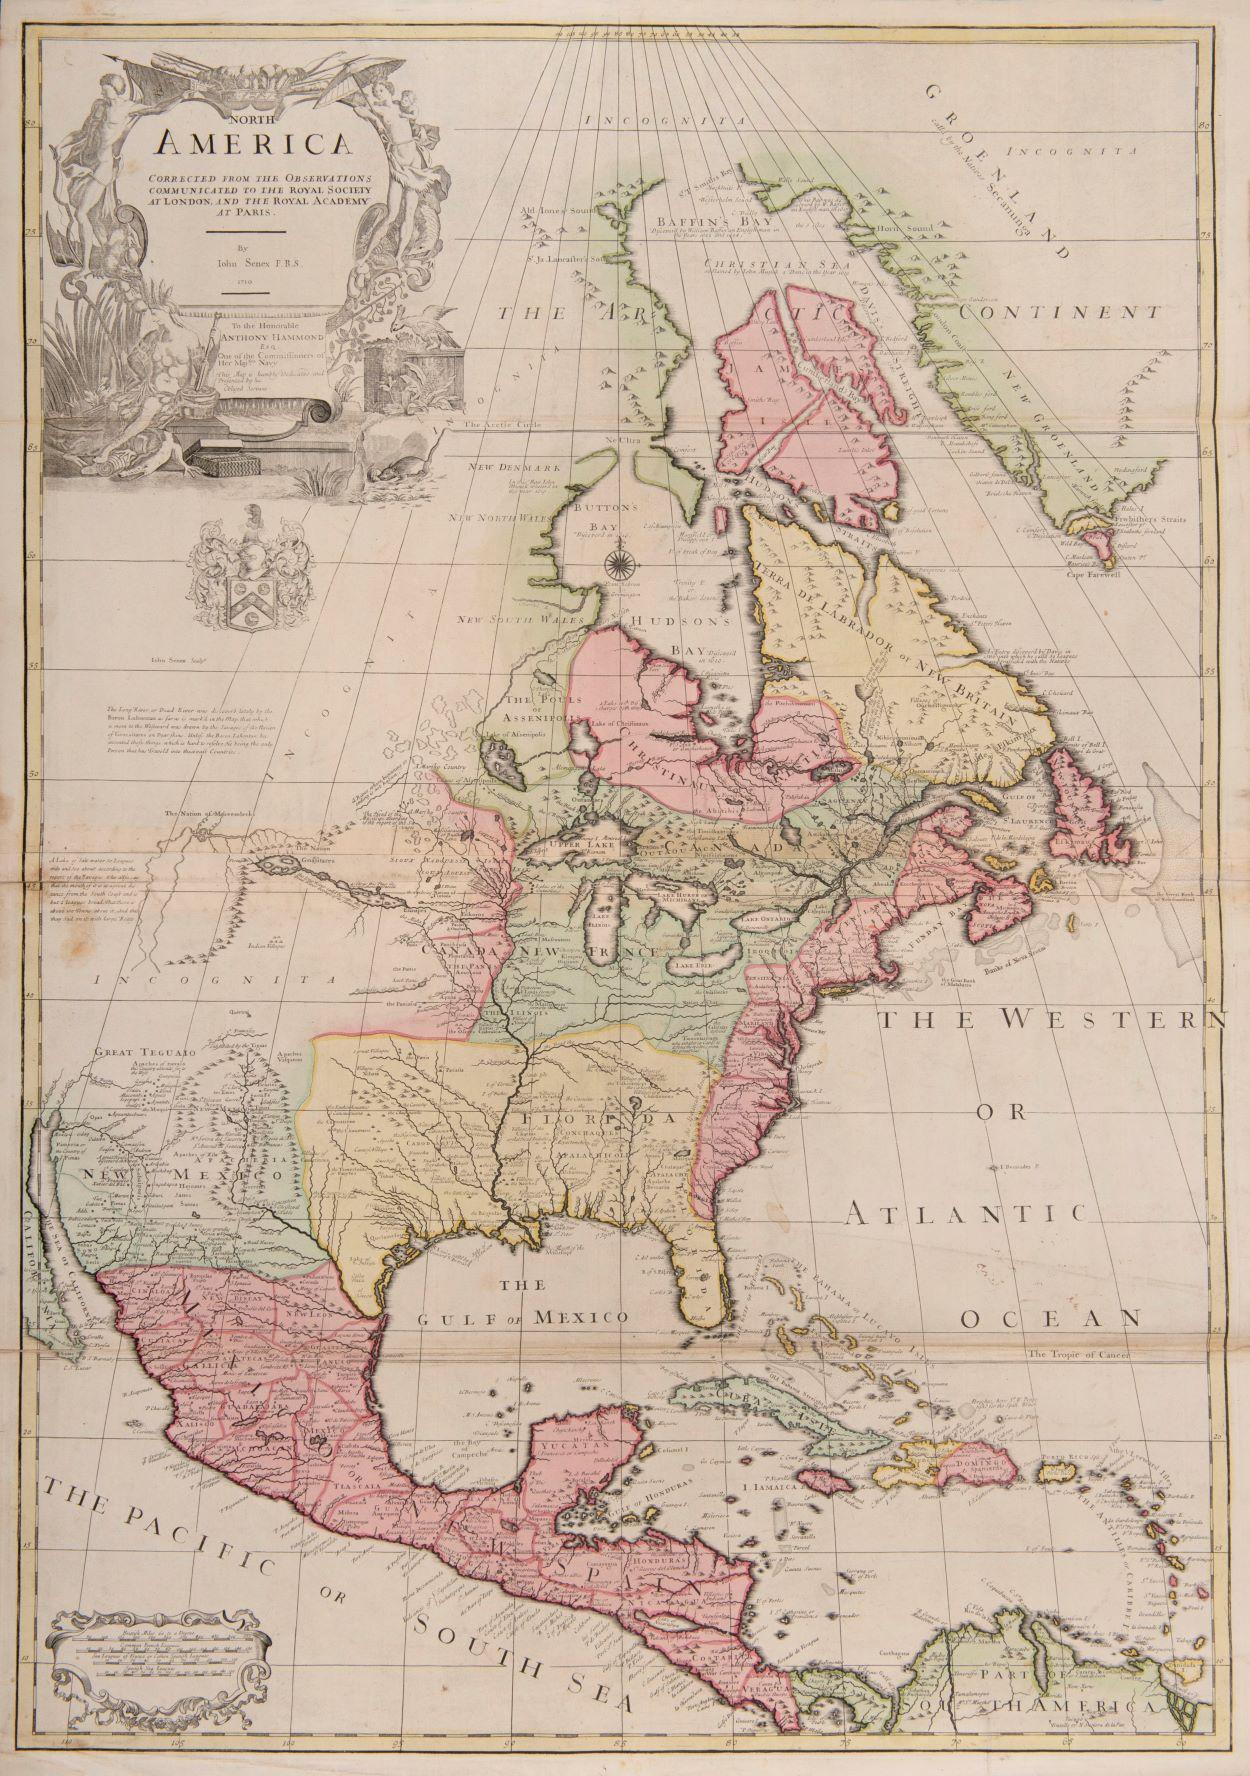 l'une des premières cartes anglaises à grande échelle de l'Amérique du Nord - Art de John Senex